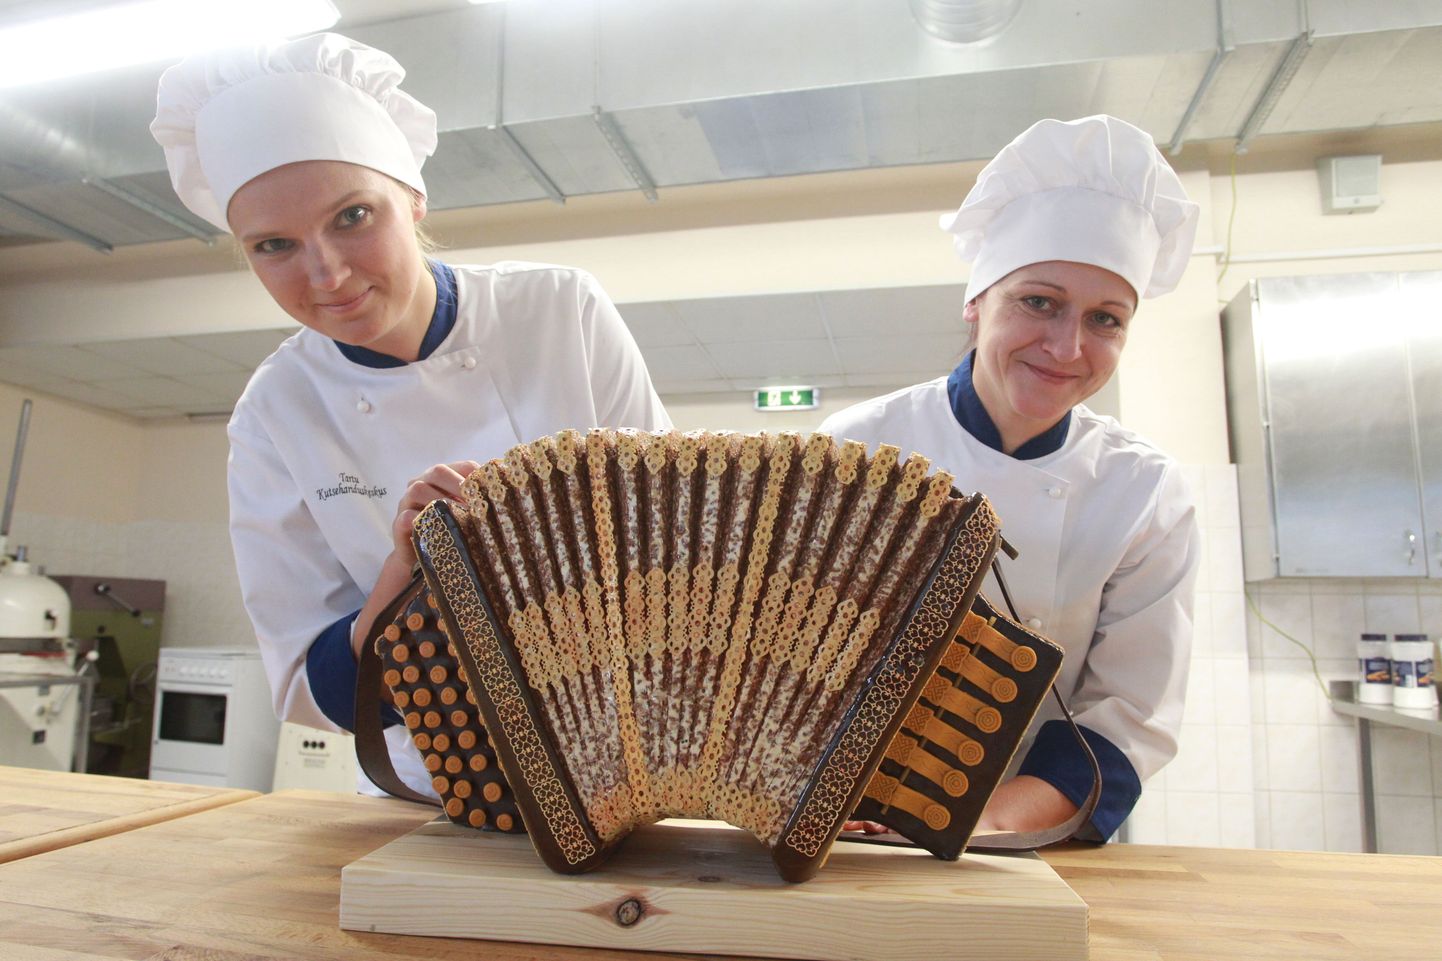 Tallinna toidumessil peetud võistlusel «Aasta kondiiter 2015» saavutasid Tartu kutsehariduskeskuse kondiitritehnoloogia õppurid Sirle Saviauk (vasakul) ja Katrin Allas esikoha.